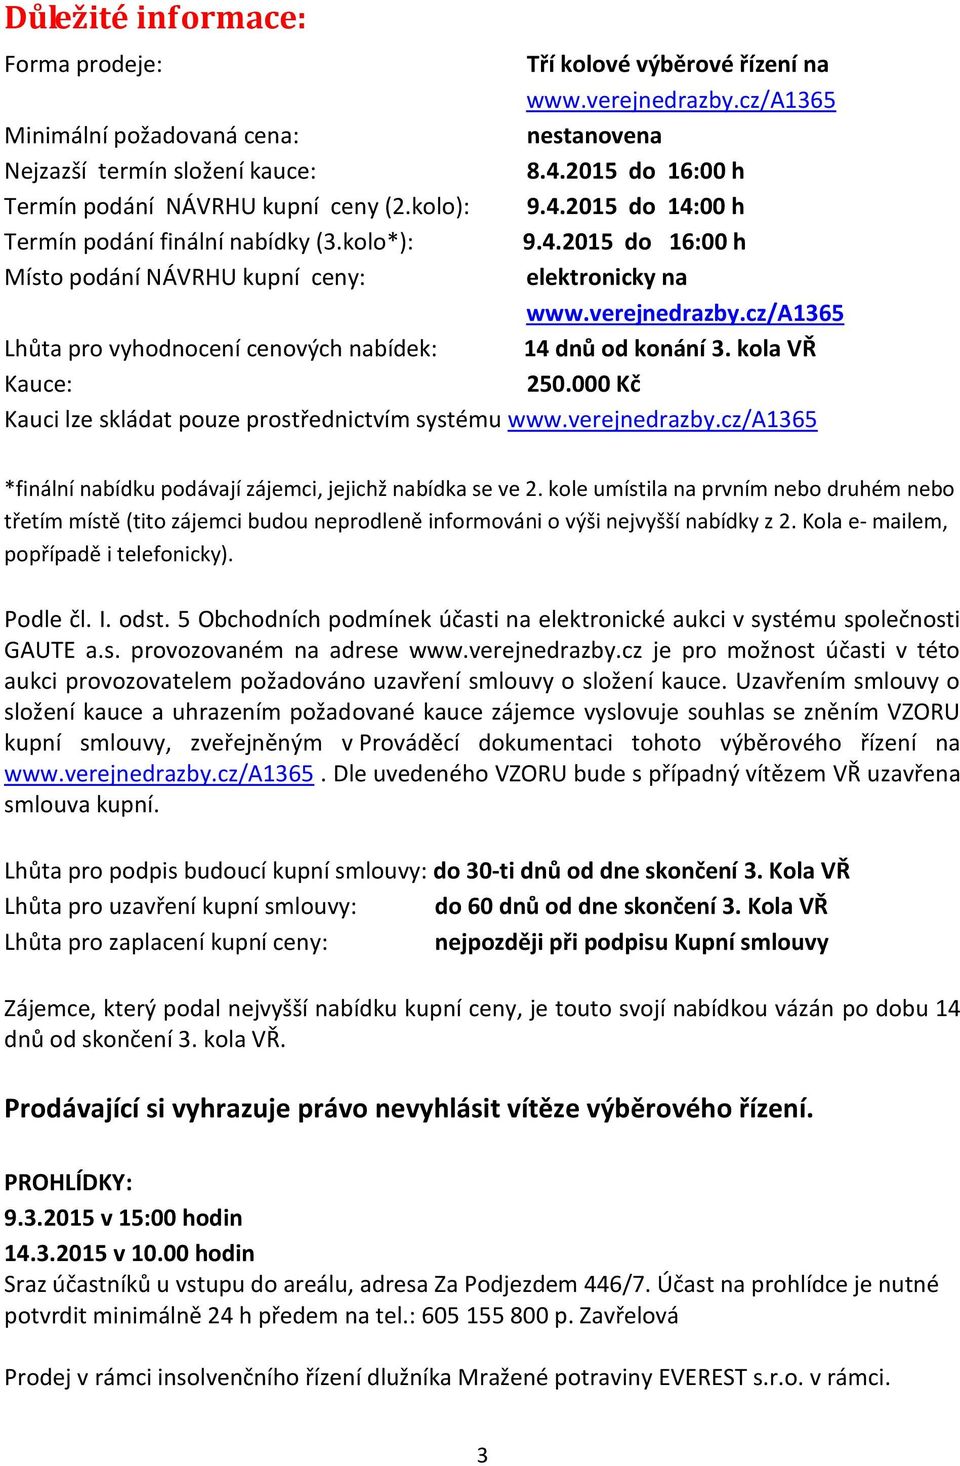 verejnedrazby.cz/a1365 Lhůta pro vyhodnocení cenových nabídek: 14 dnů od konání 3. kola VŘ Kauce: 250.000 Kč Kauci lze skládat pouze prostřednictvím systému www.verejnedrazby.cz/a1365 *finální nabídku podávají zájemci, jejichž nabídka se ve 2.